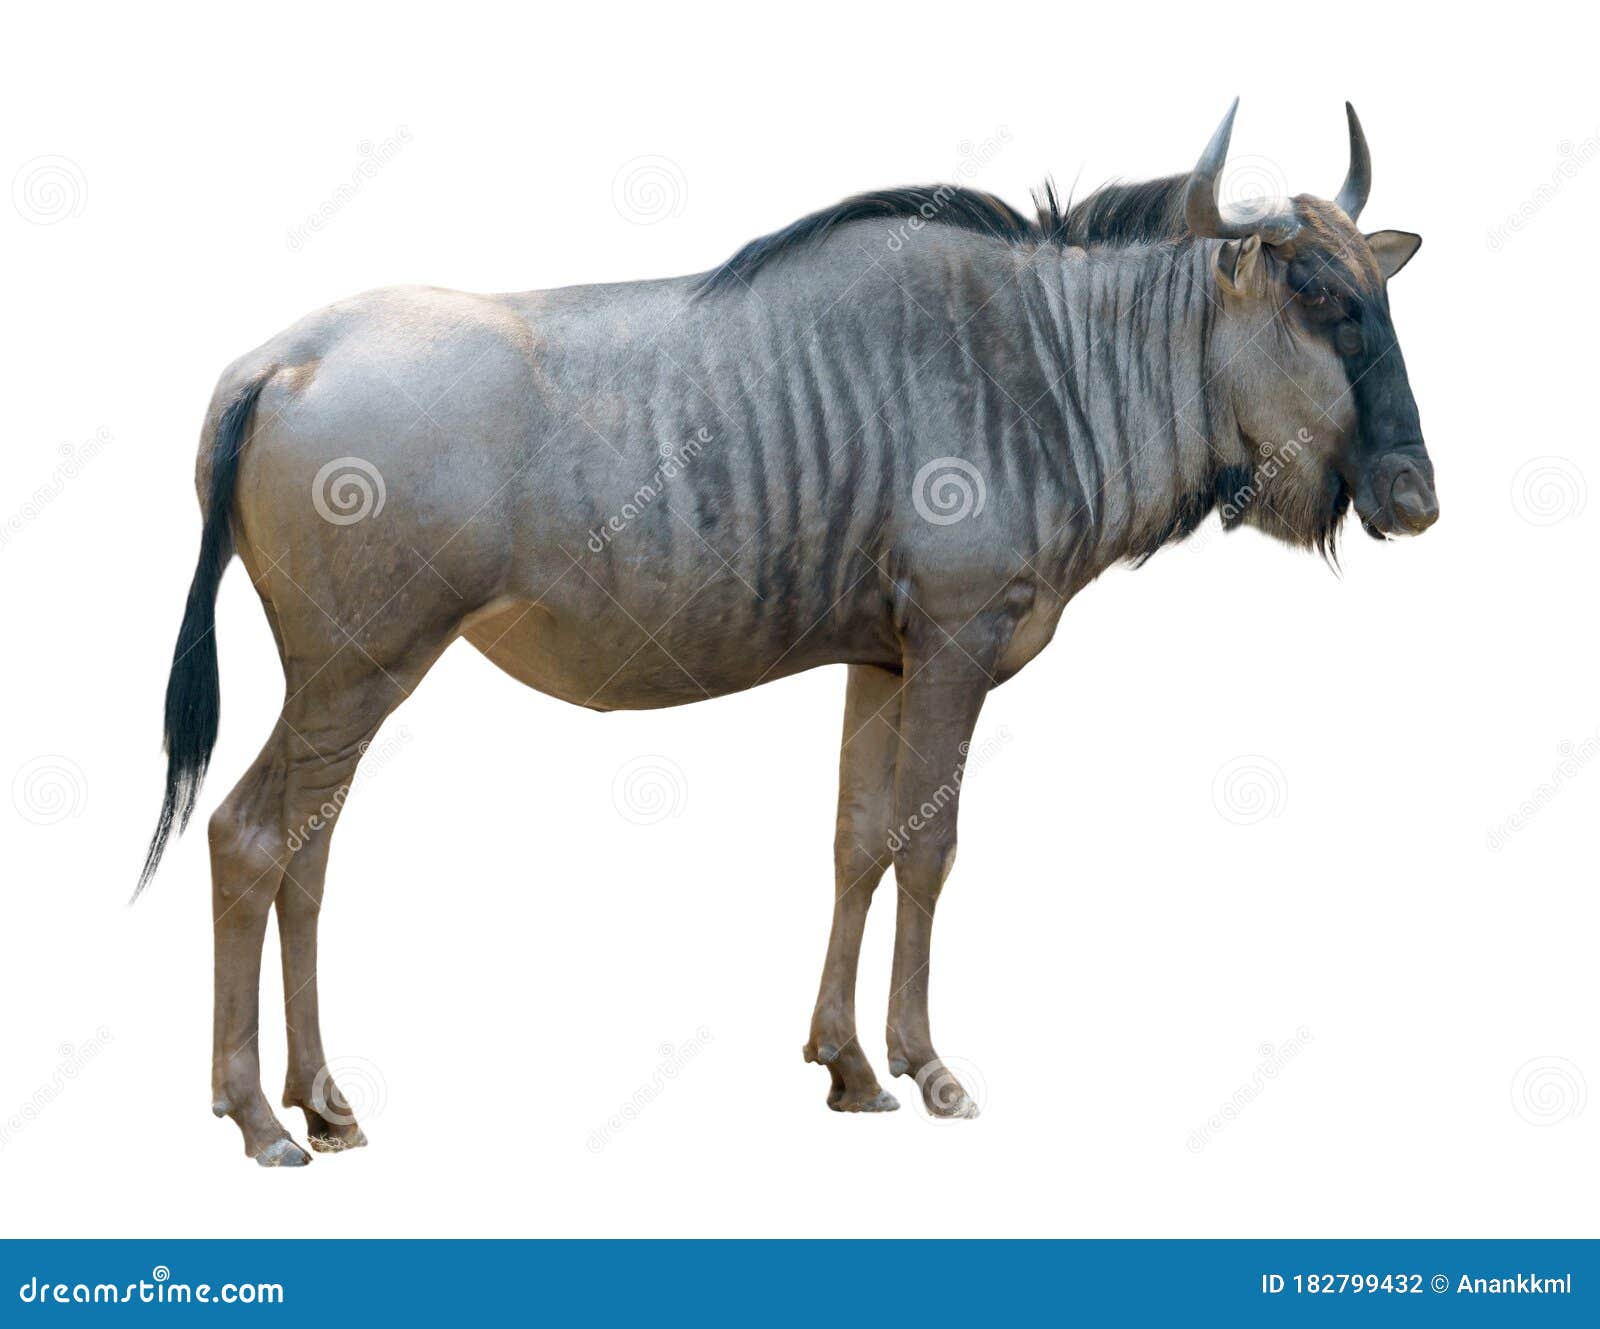 wildebeest  on white background